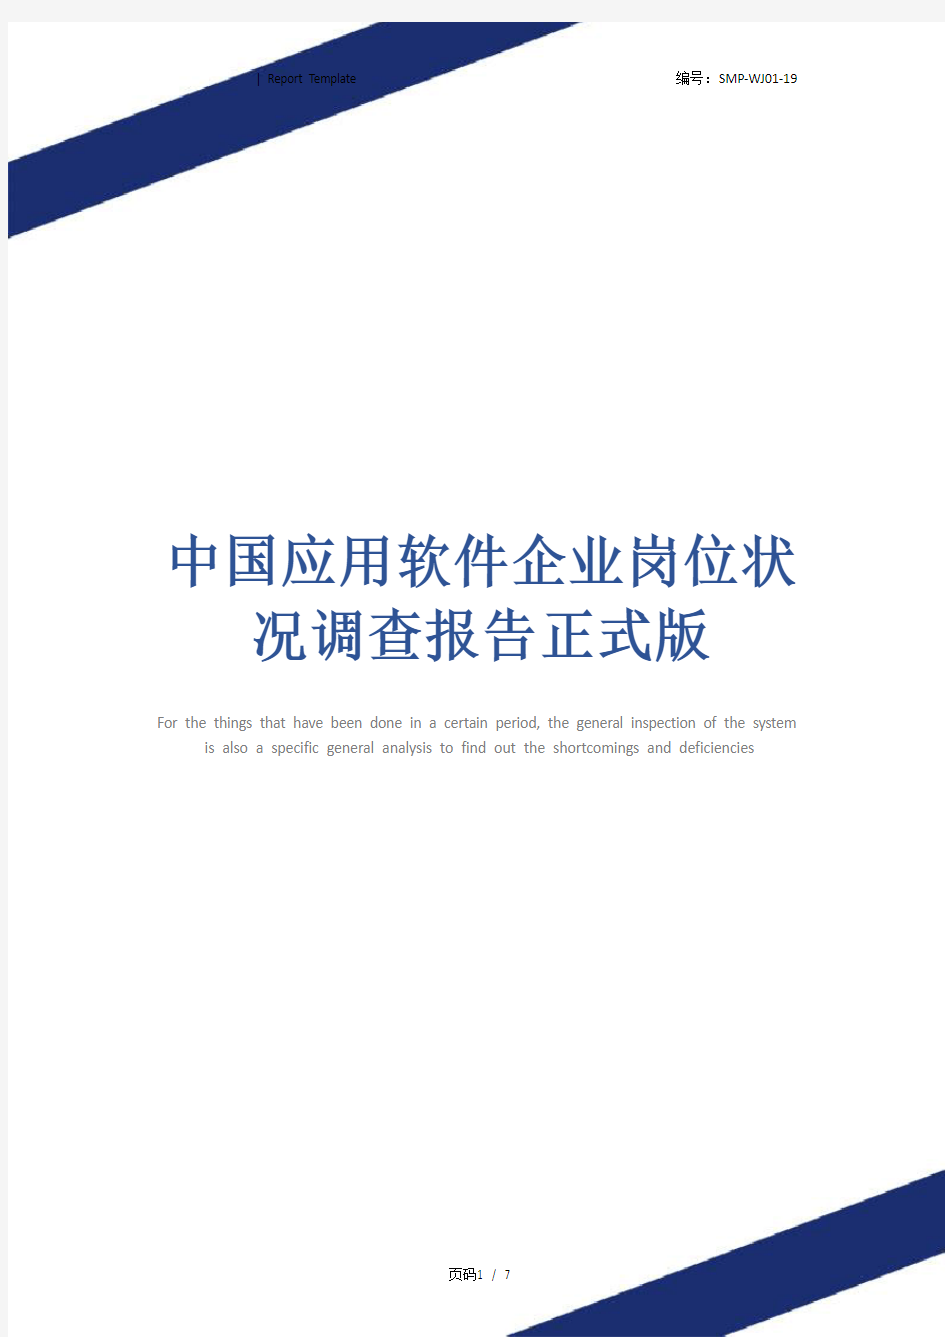 中国应用软件企业岗位状况调查报告正式版